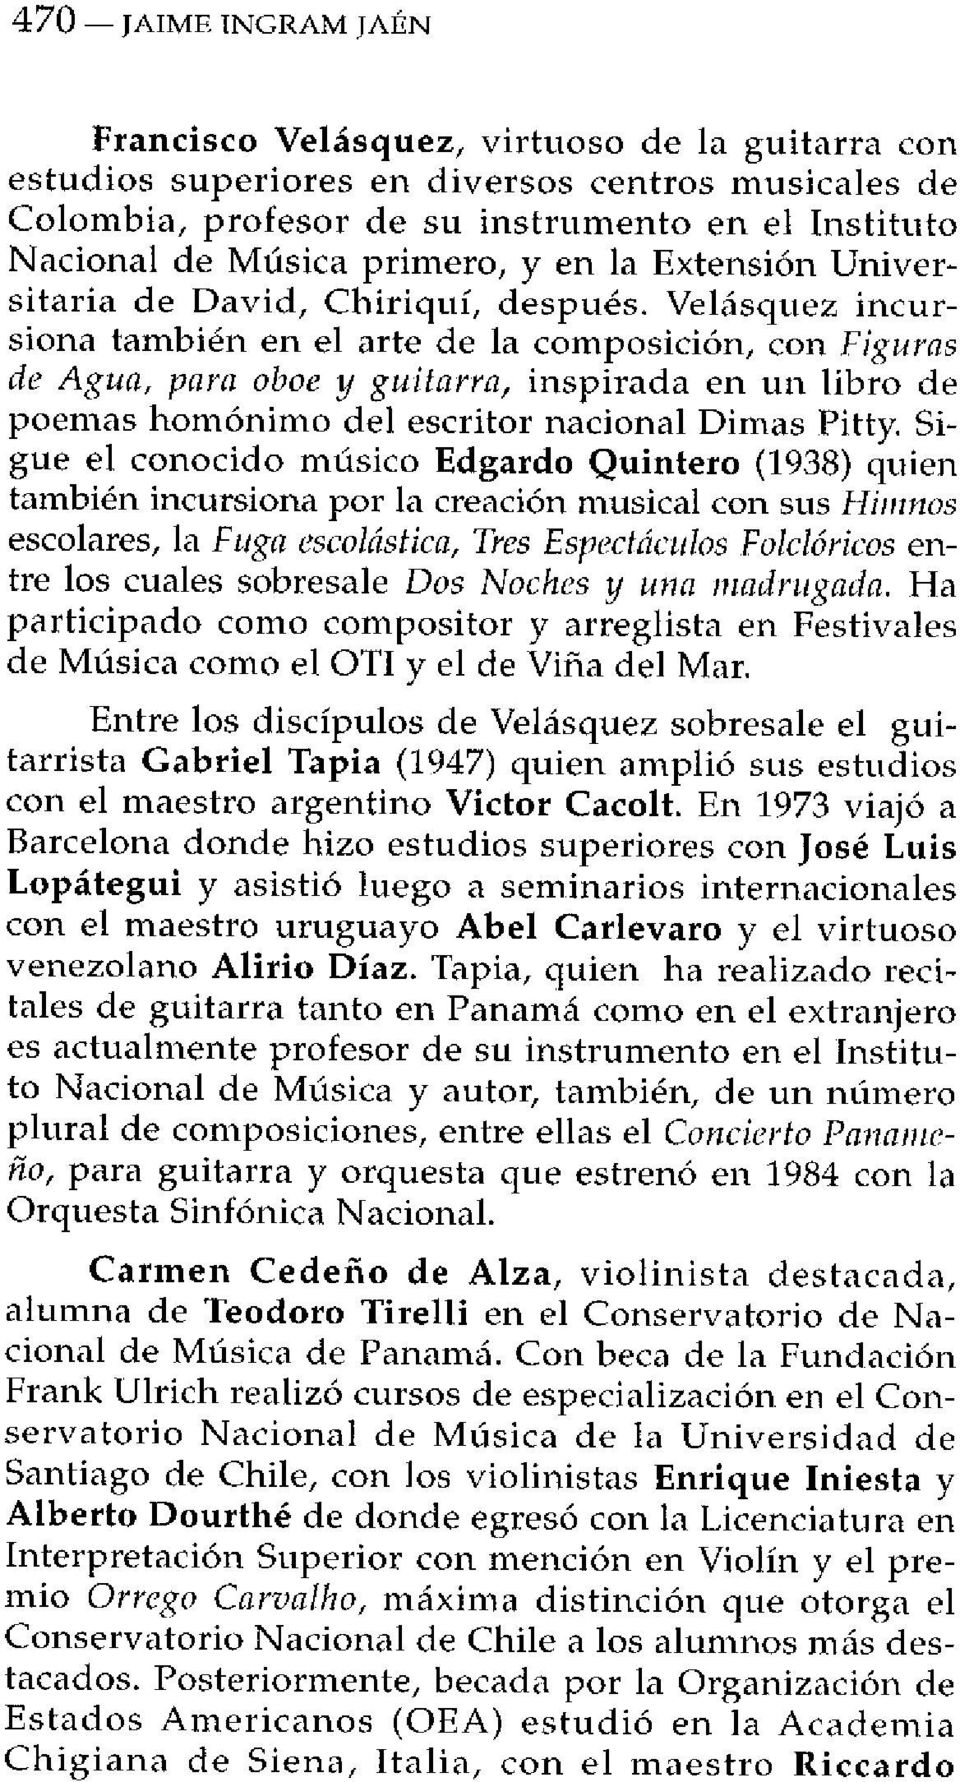 Velásquez incursiona también en el arte de la composición, con Figuras de Agua, para oboe y guitarra, inspirada en un libro de poemas homónimo del escritor nacional Dimas Pitty.